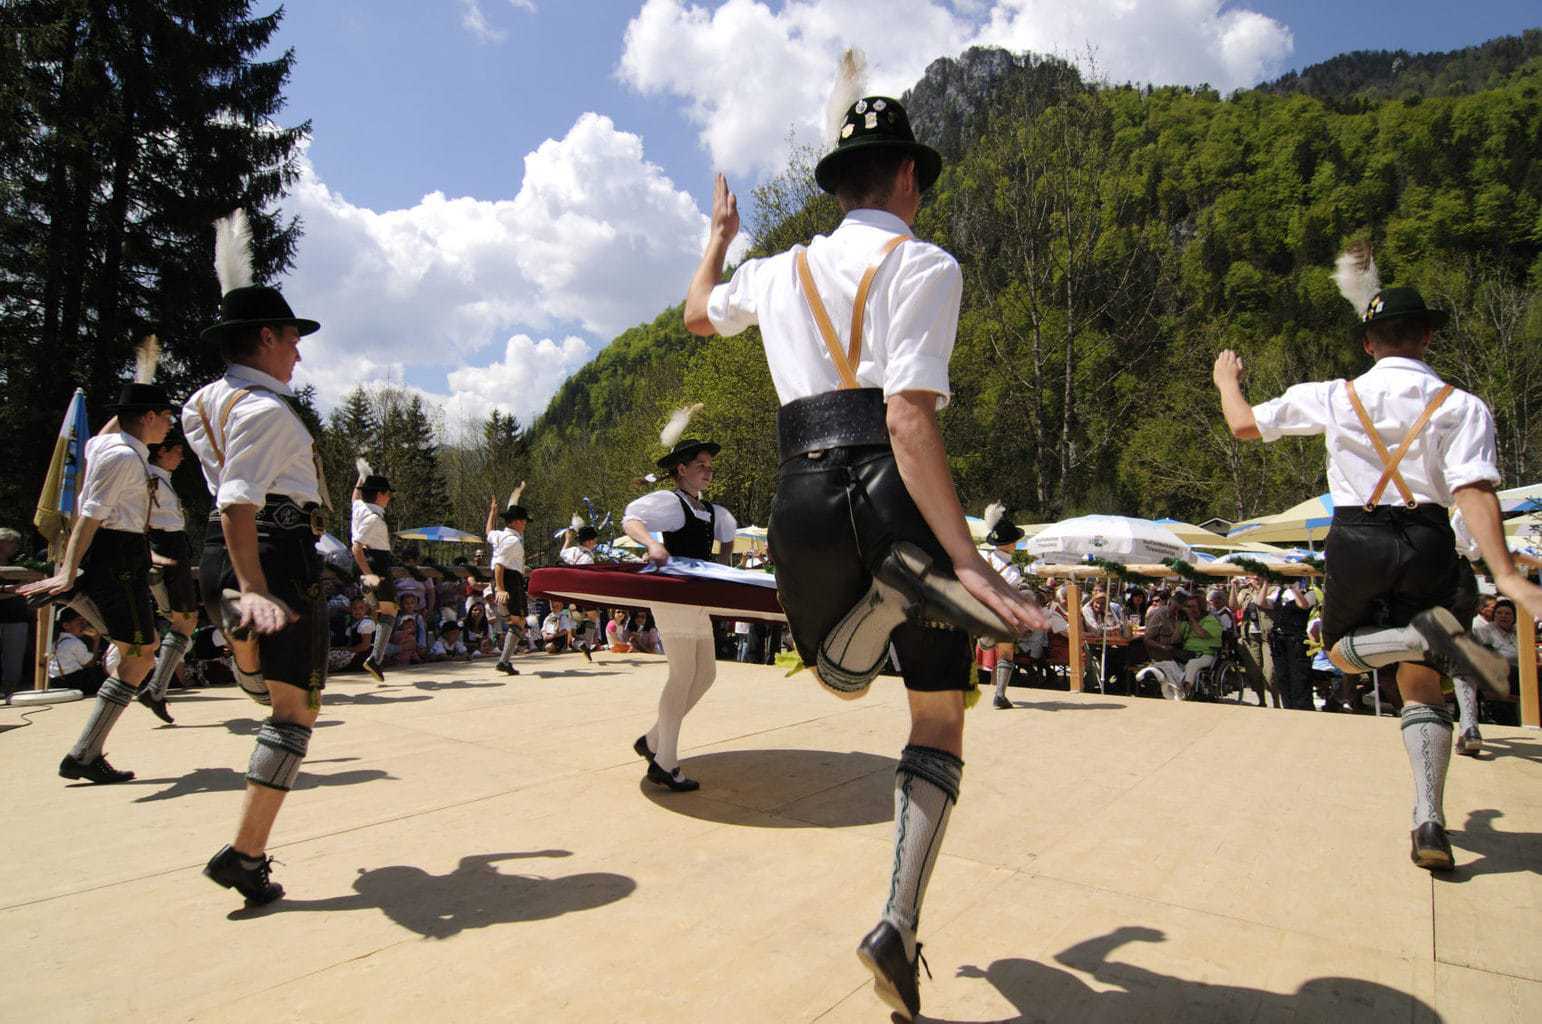 Traditionele meidans in Beieren met mannen in trachten